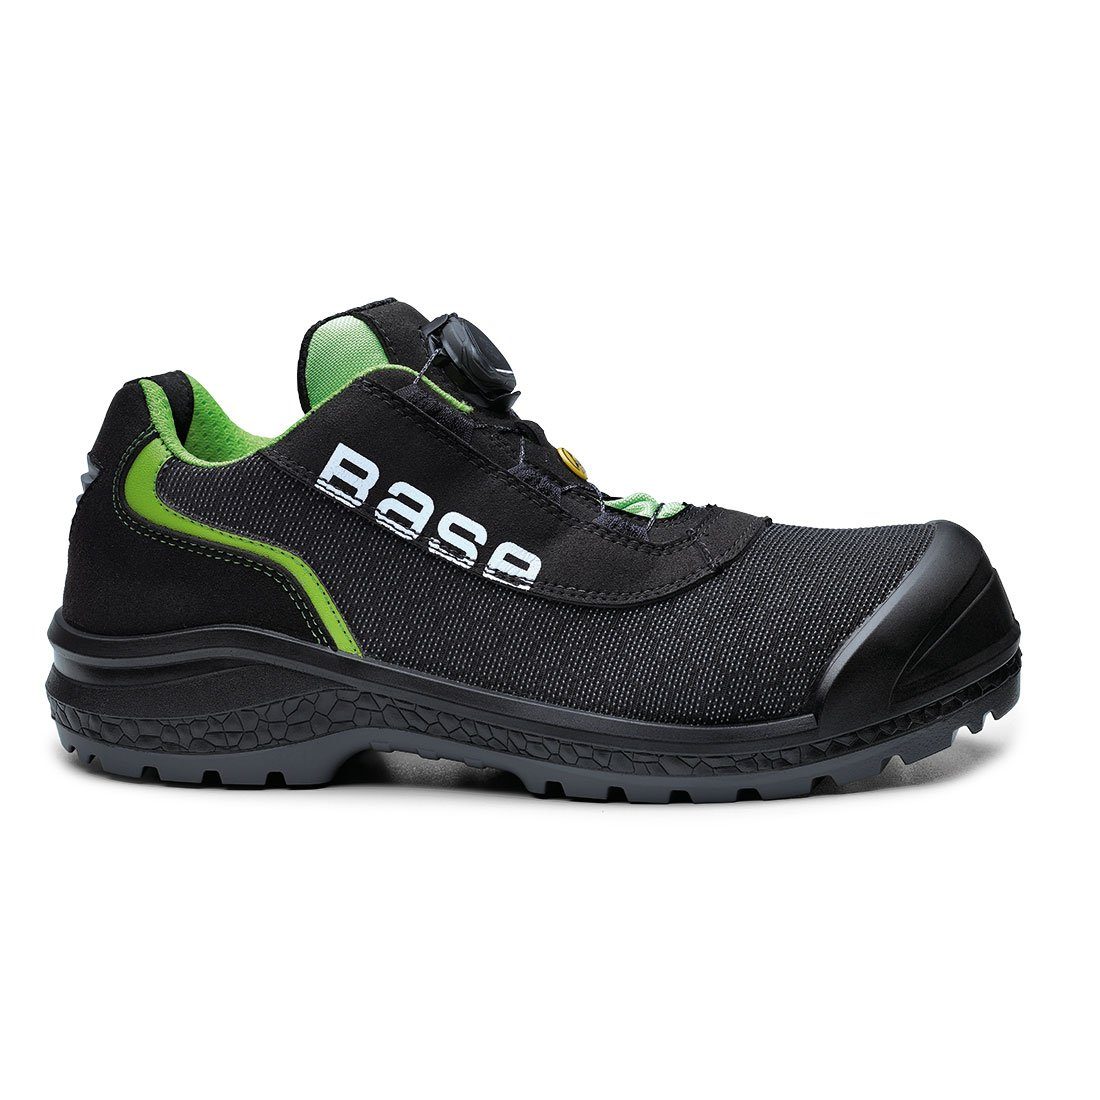 Base Footwear Sicherheitsschuhe B0822 S1P ESD mit Schutzkappe Sicherheitsschuh ESD - Schutz elektronischer Geräte vor Entladung, 100 % metallfrei, Schutzkappe 200 Joule, Durchtrittsicher, Spezialdrehverschluß | Sicherheitsschuhe